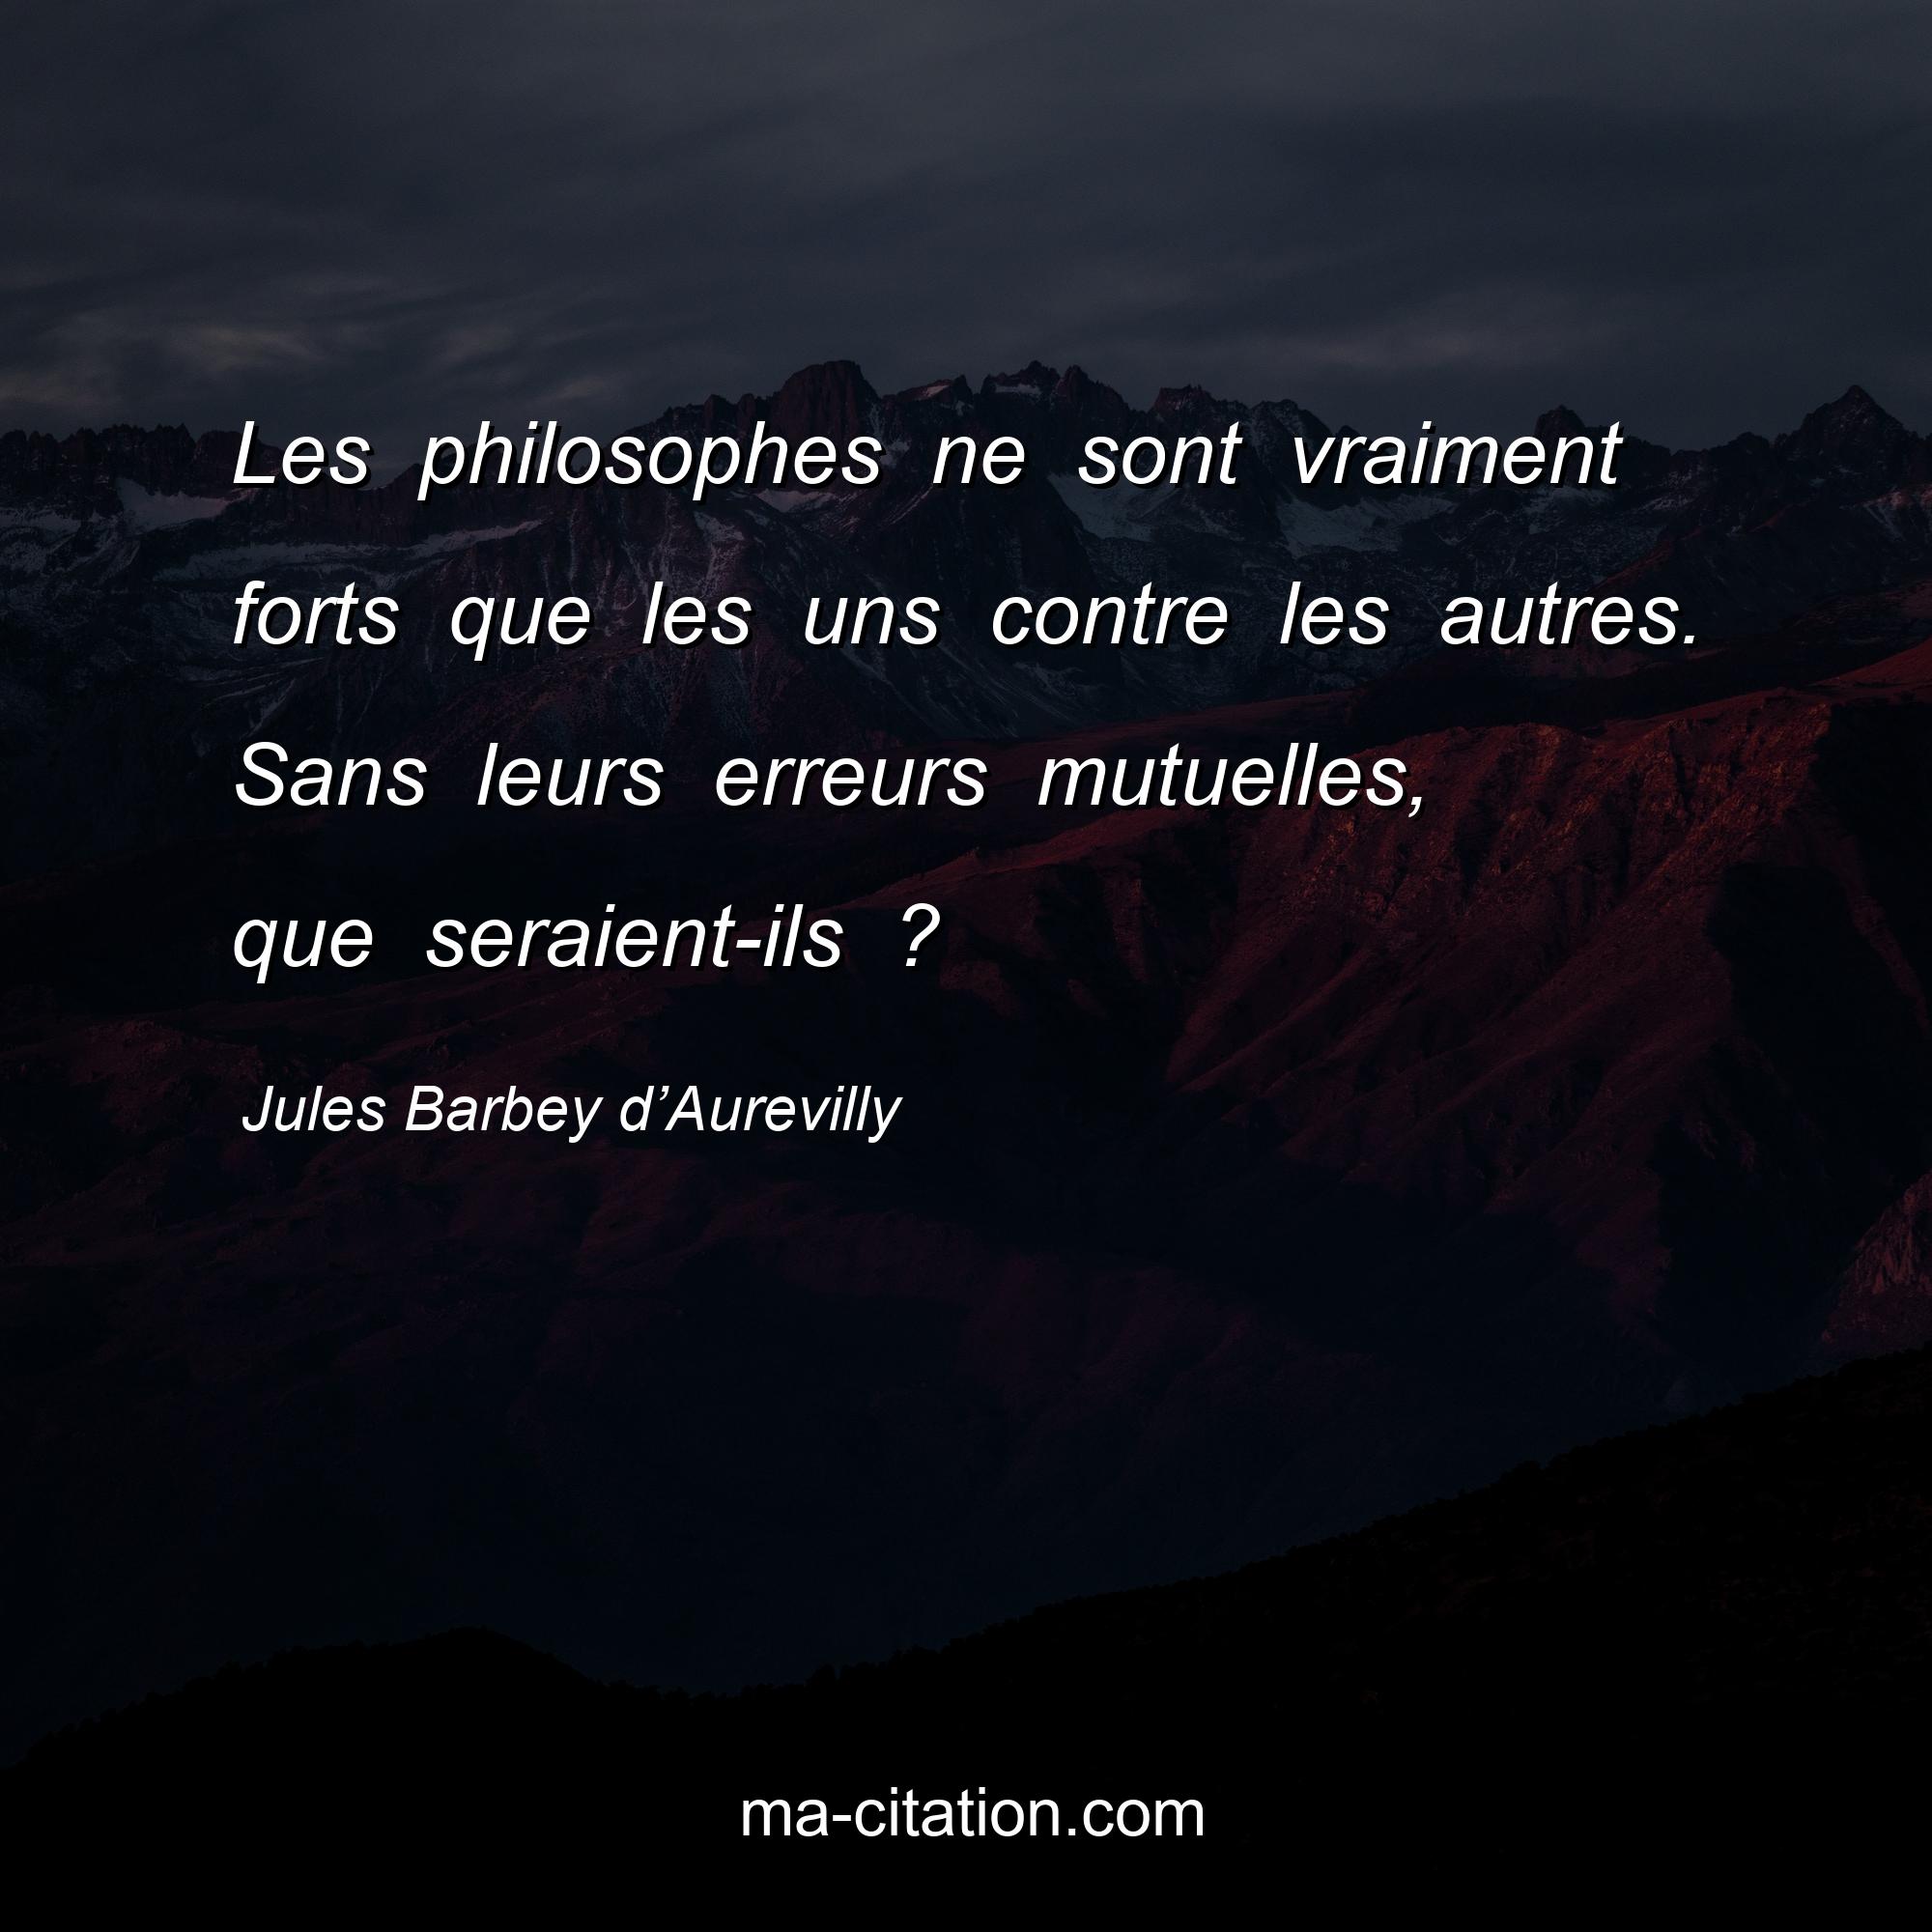 Jules Barbey d’Aurevilly : Les philosophes ne sont vraiment forts que les uns contre les autres. Sans leurs erreurs mutuelles, que seraient-ils ?